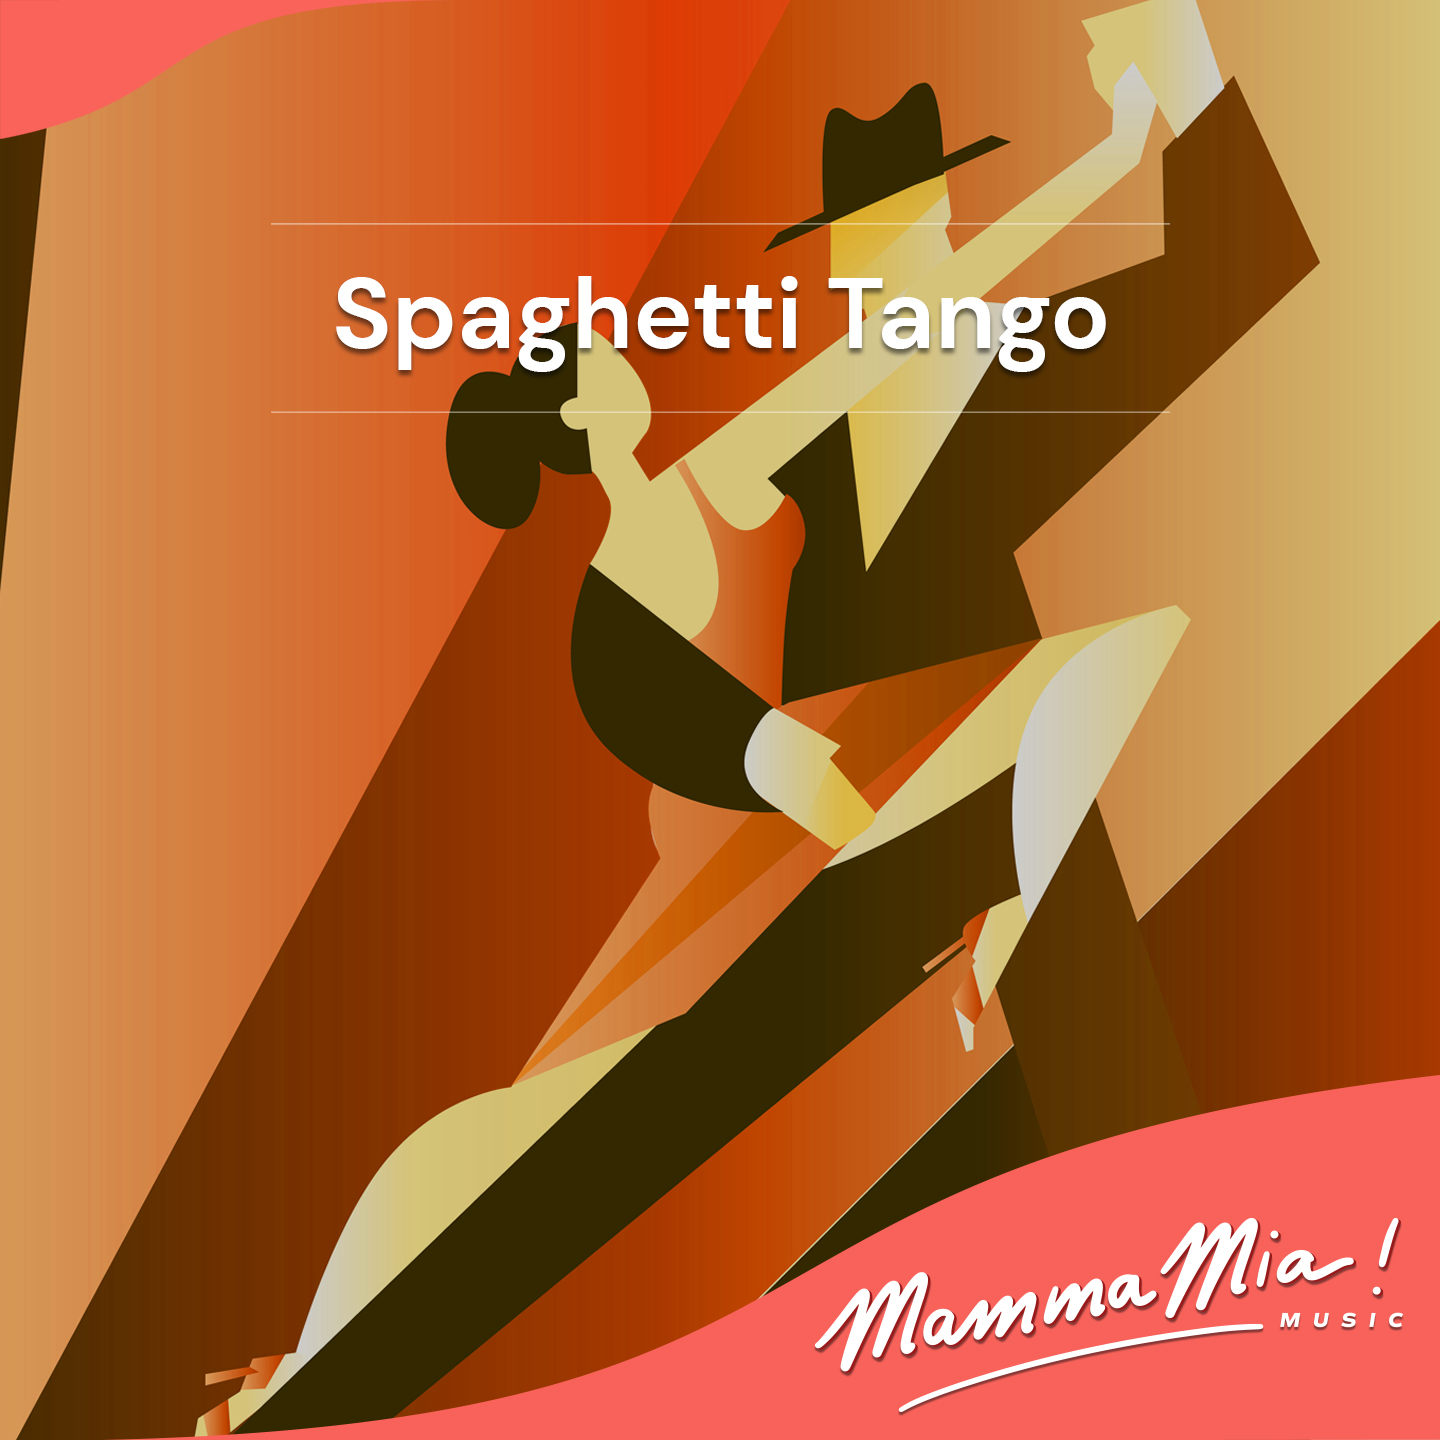 Spaghetti Tango